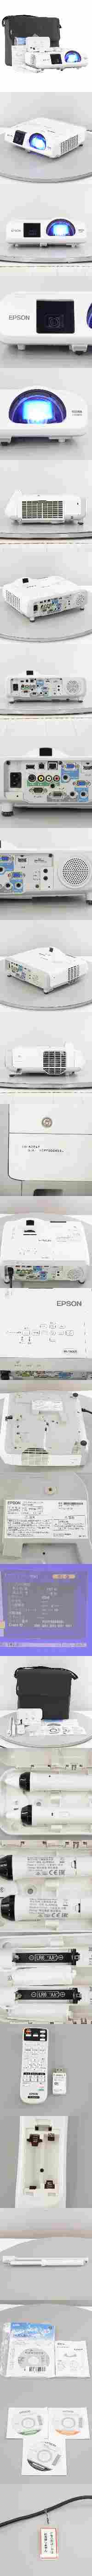 【限定SALE豊富な】[PG]USED 8日保証 ランプ157時間 EPSON EB-536WT H670D LCD PROJECTOR プロジェクター 本体